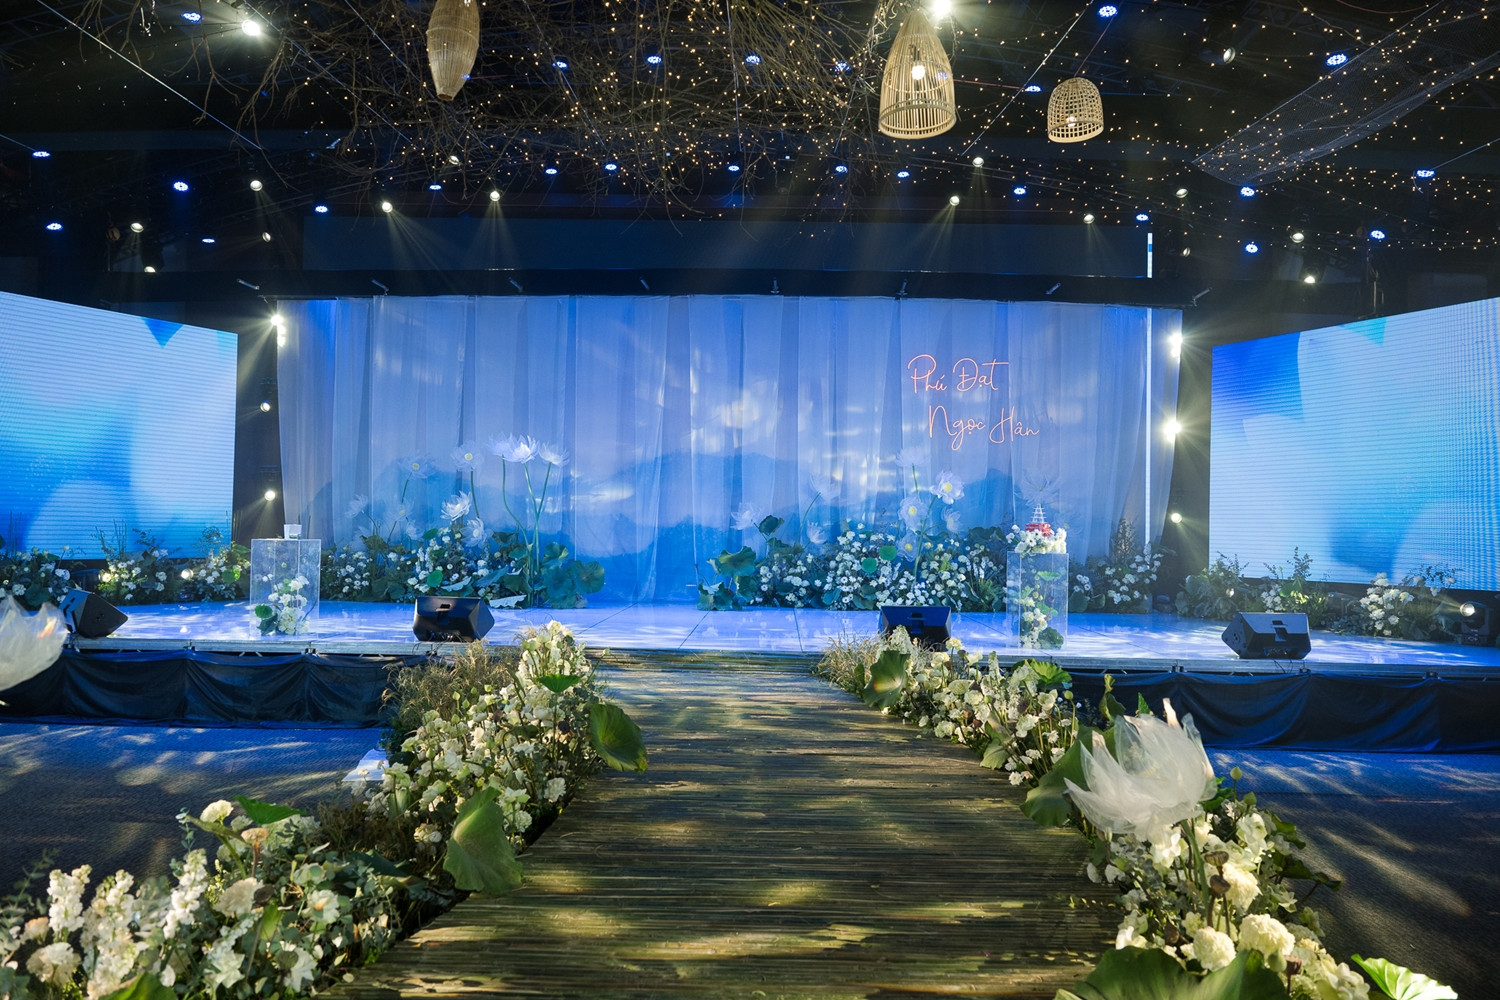 Toàn cảnh không gian lễ cưới đẹp như mơ, đậm chất làng quê Việt của hoa hậu Ngọc Hân - Ảnh 5